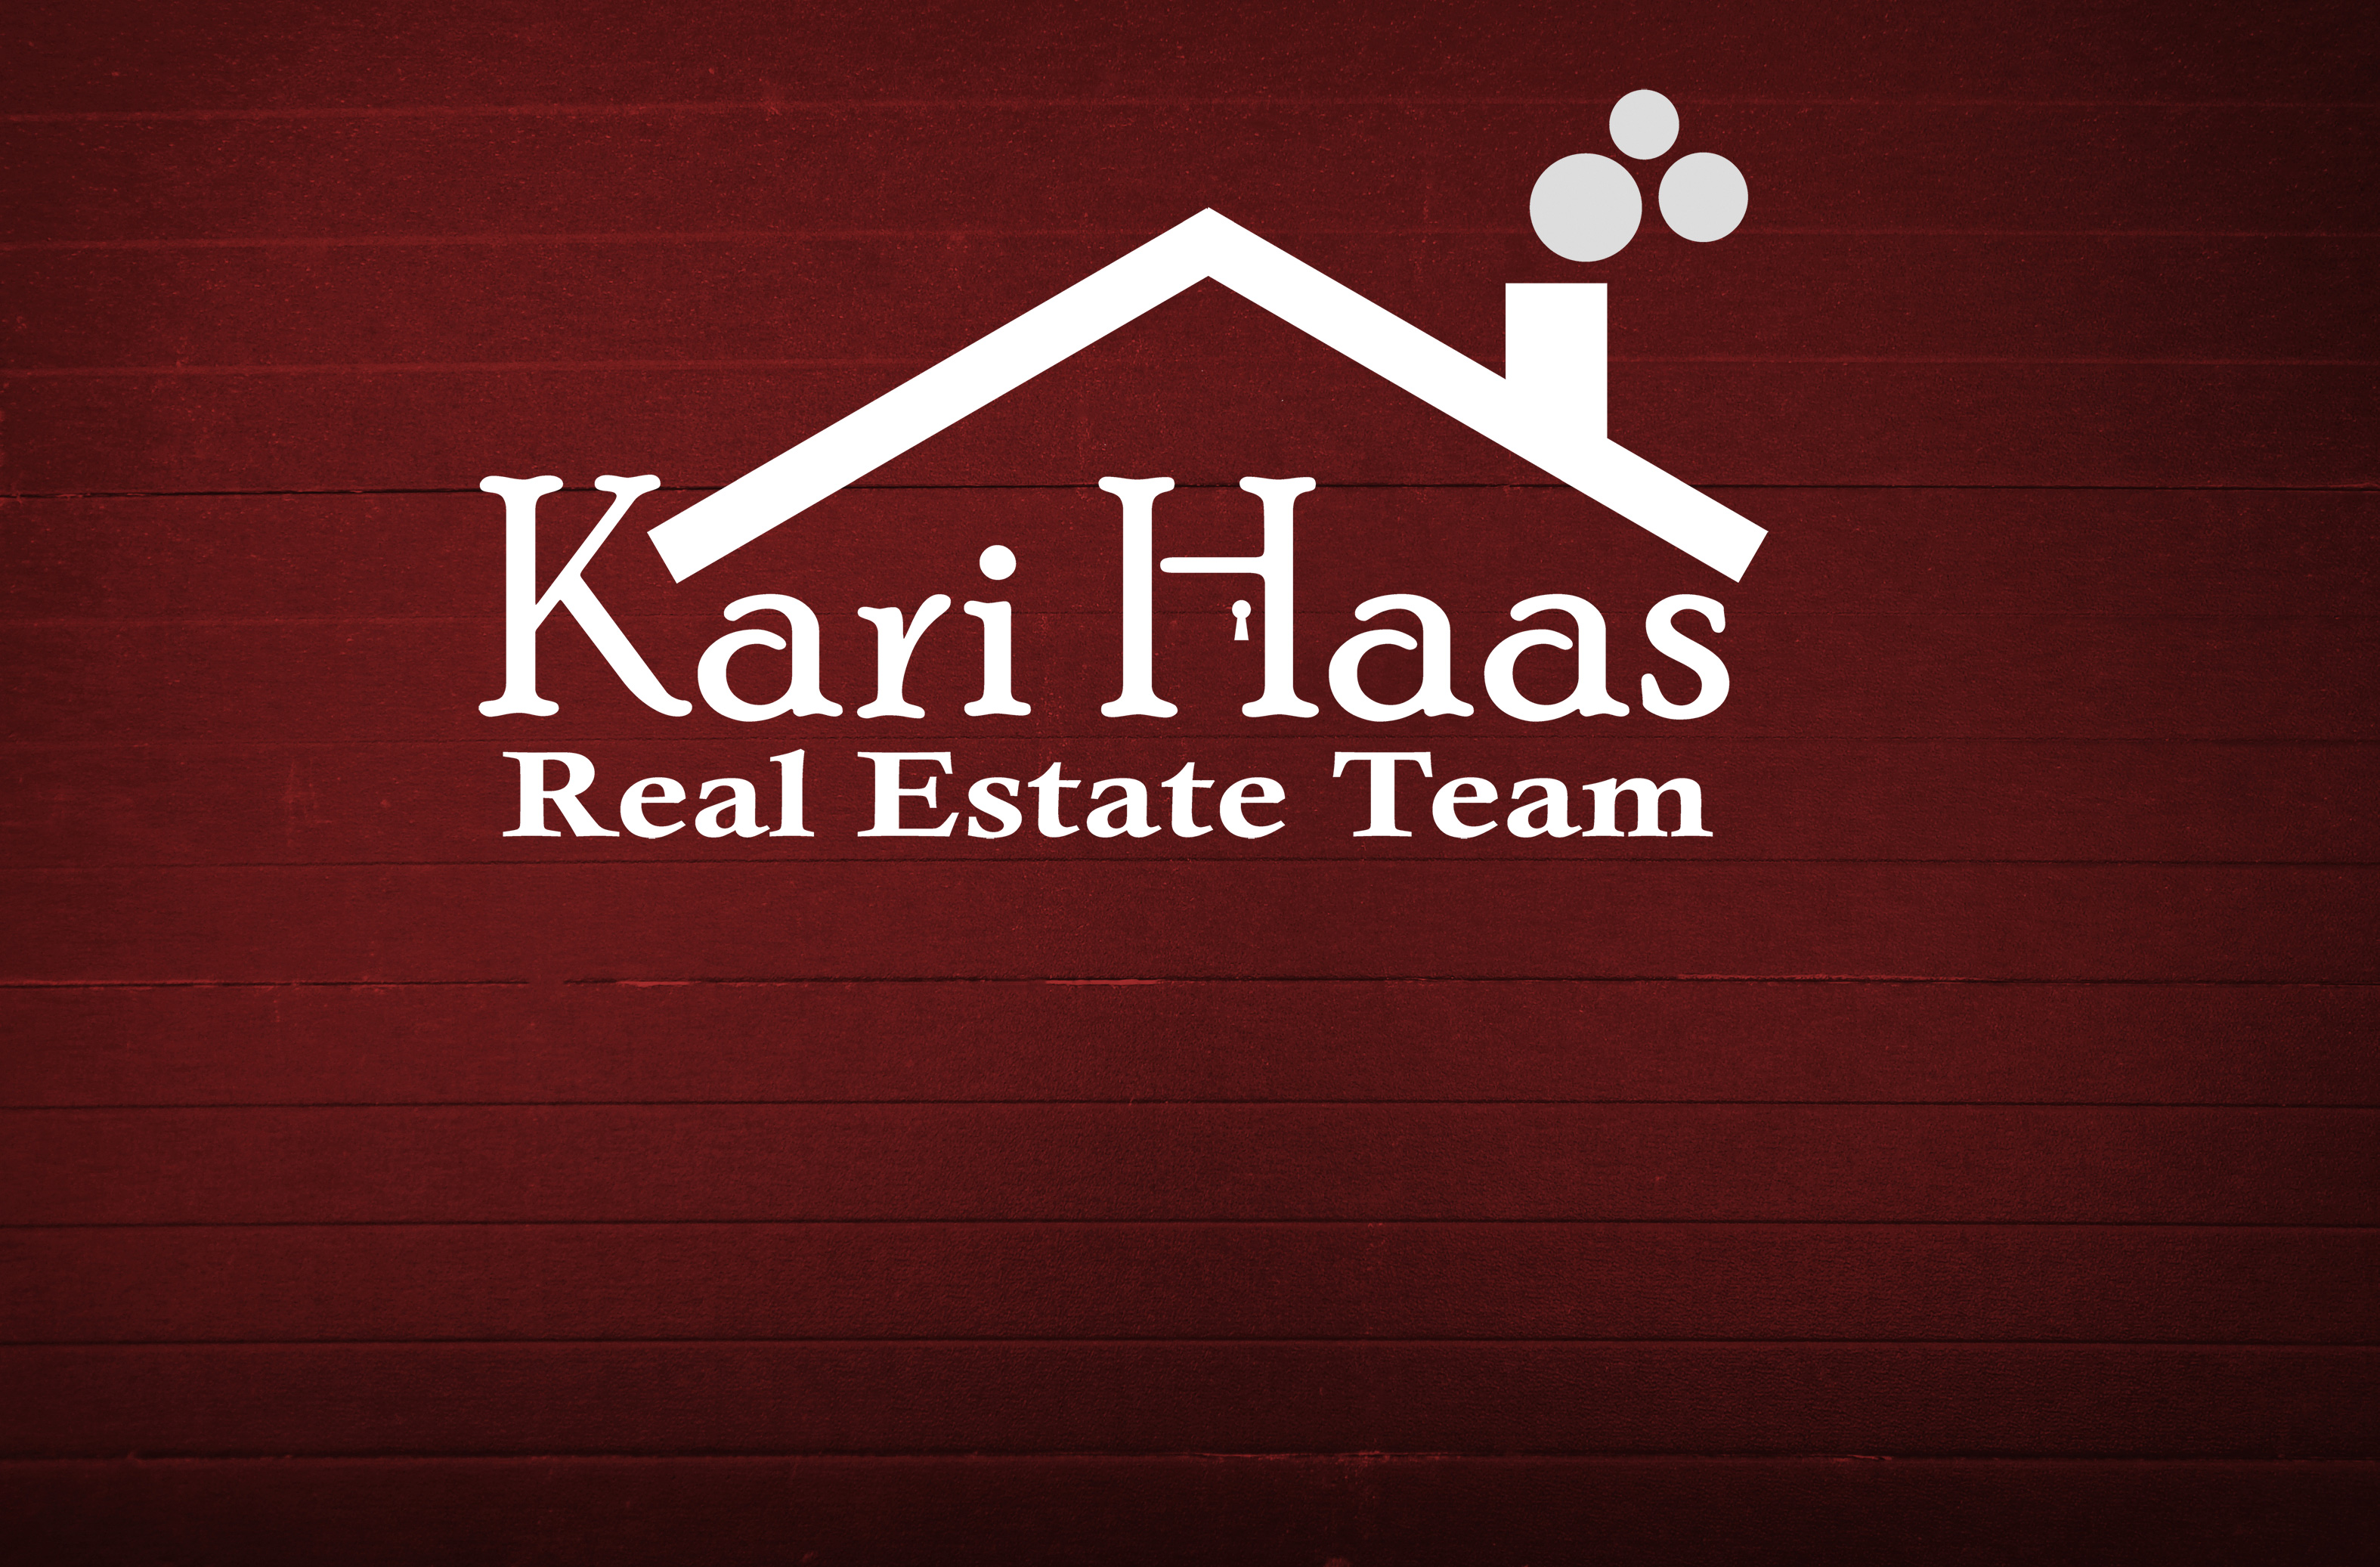 Kari Haas Real Estate